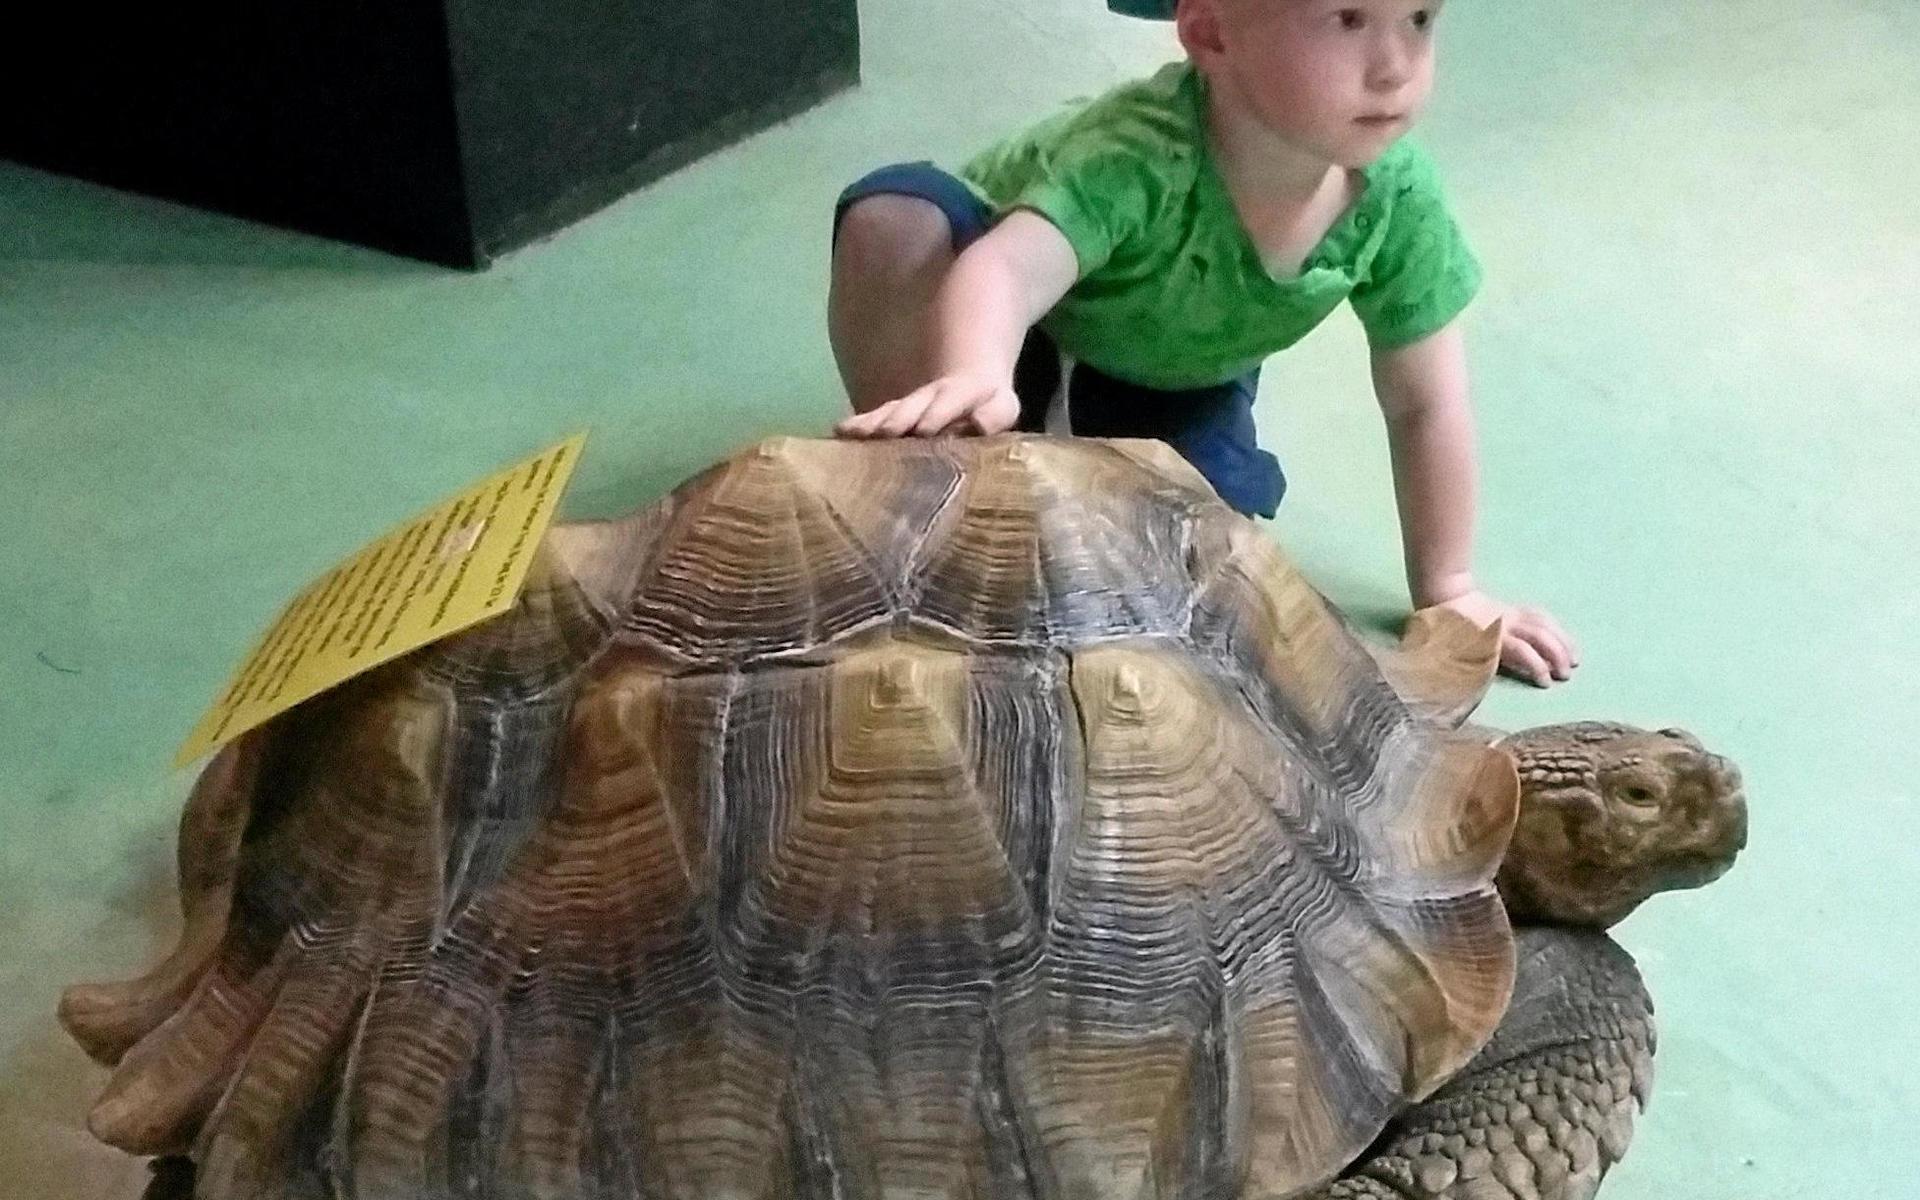 Farbror Frej är en jättesköldpadda som gärna låter sig klappas.